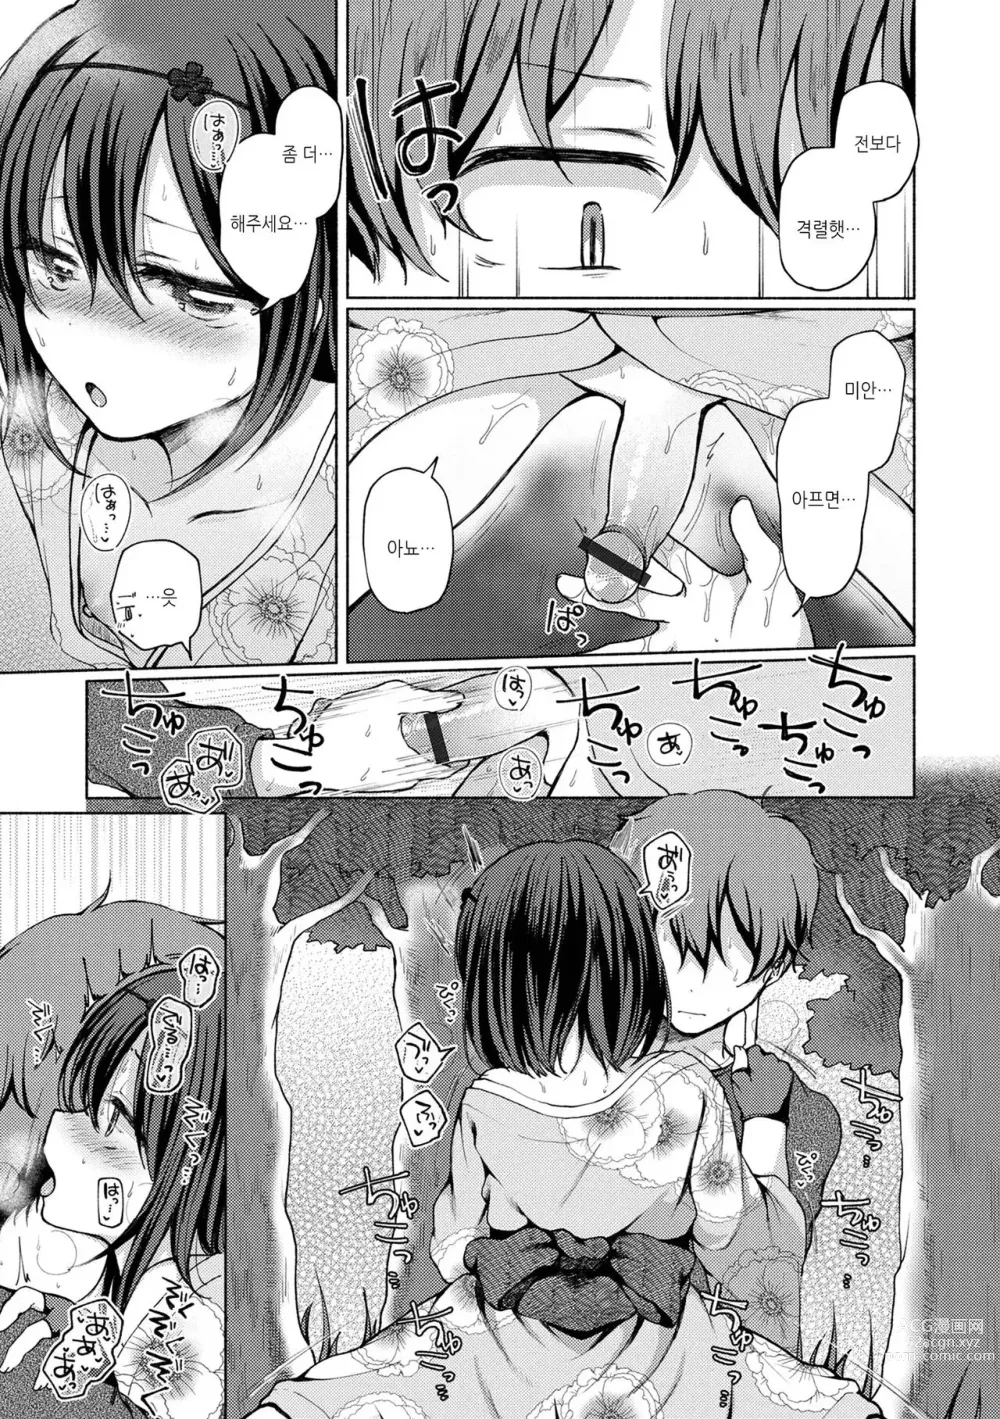 Page 7 of manga 그 아이는 여기서도 하려한다...2